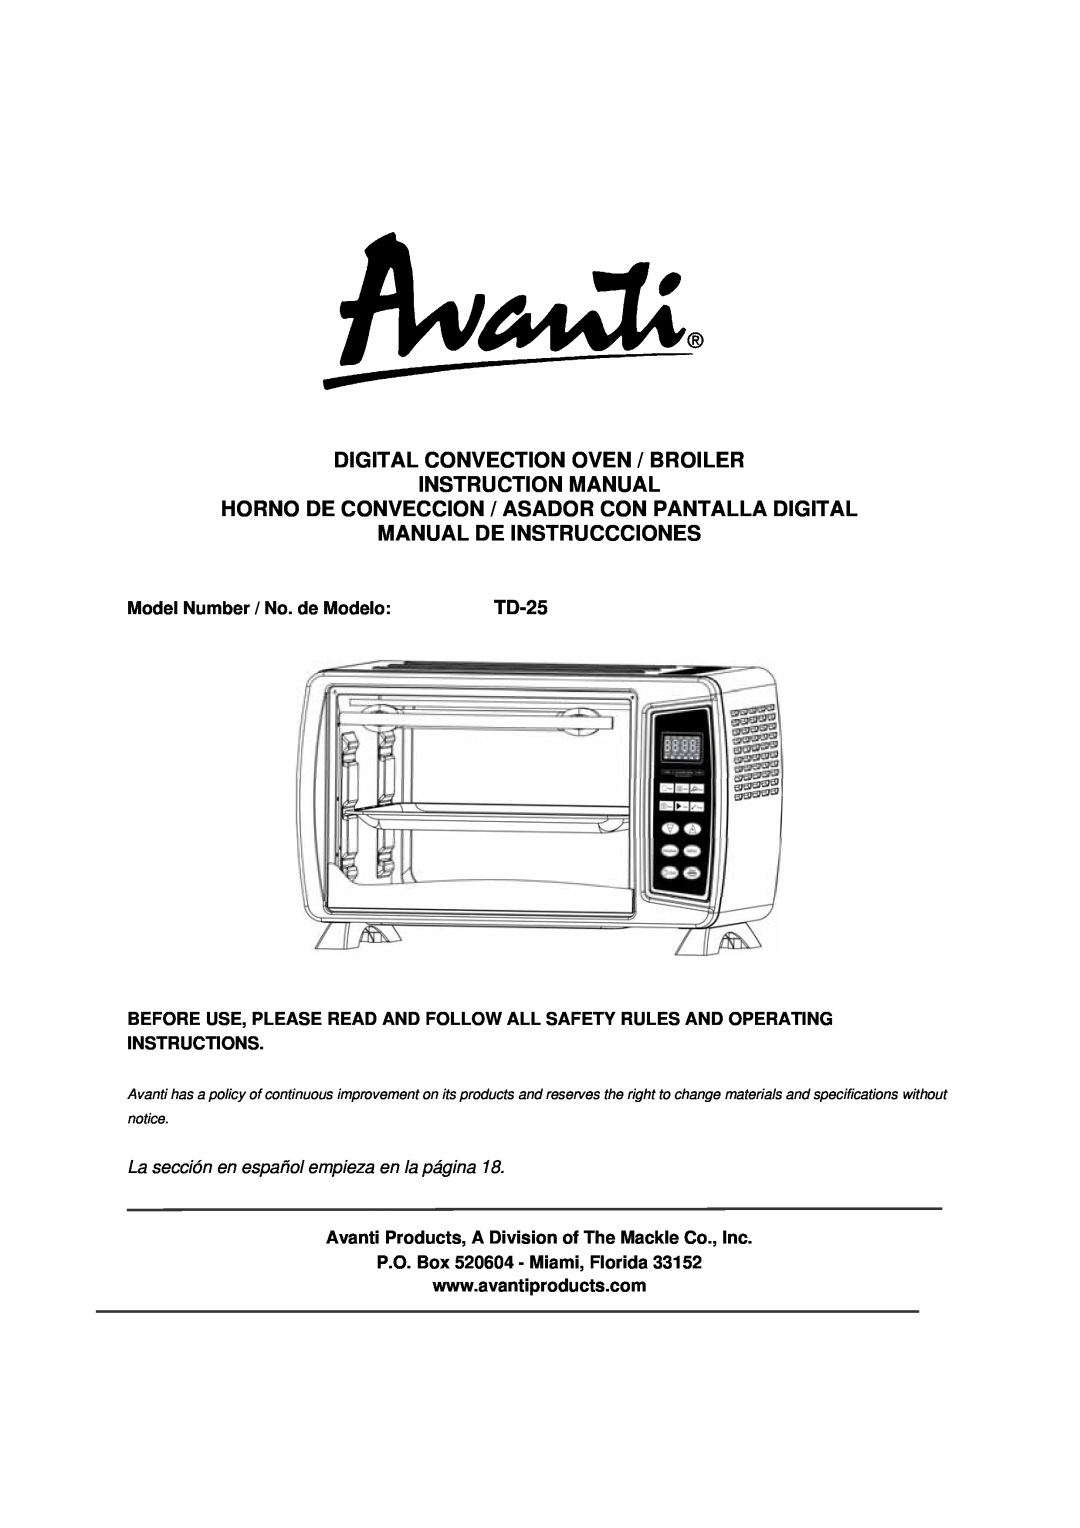 Avanti TD-25 instruction manual Digital Convection Oven / Broiler, Horno De Conveccion / Asador Con Pantalla Digital 